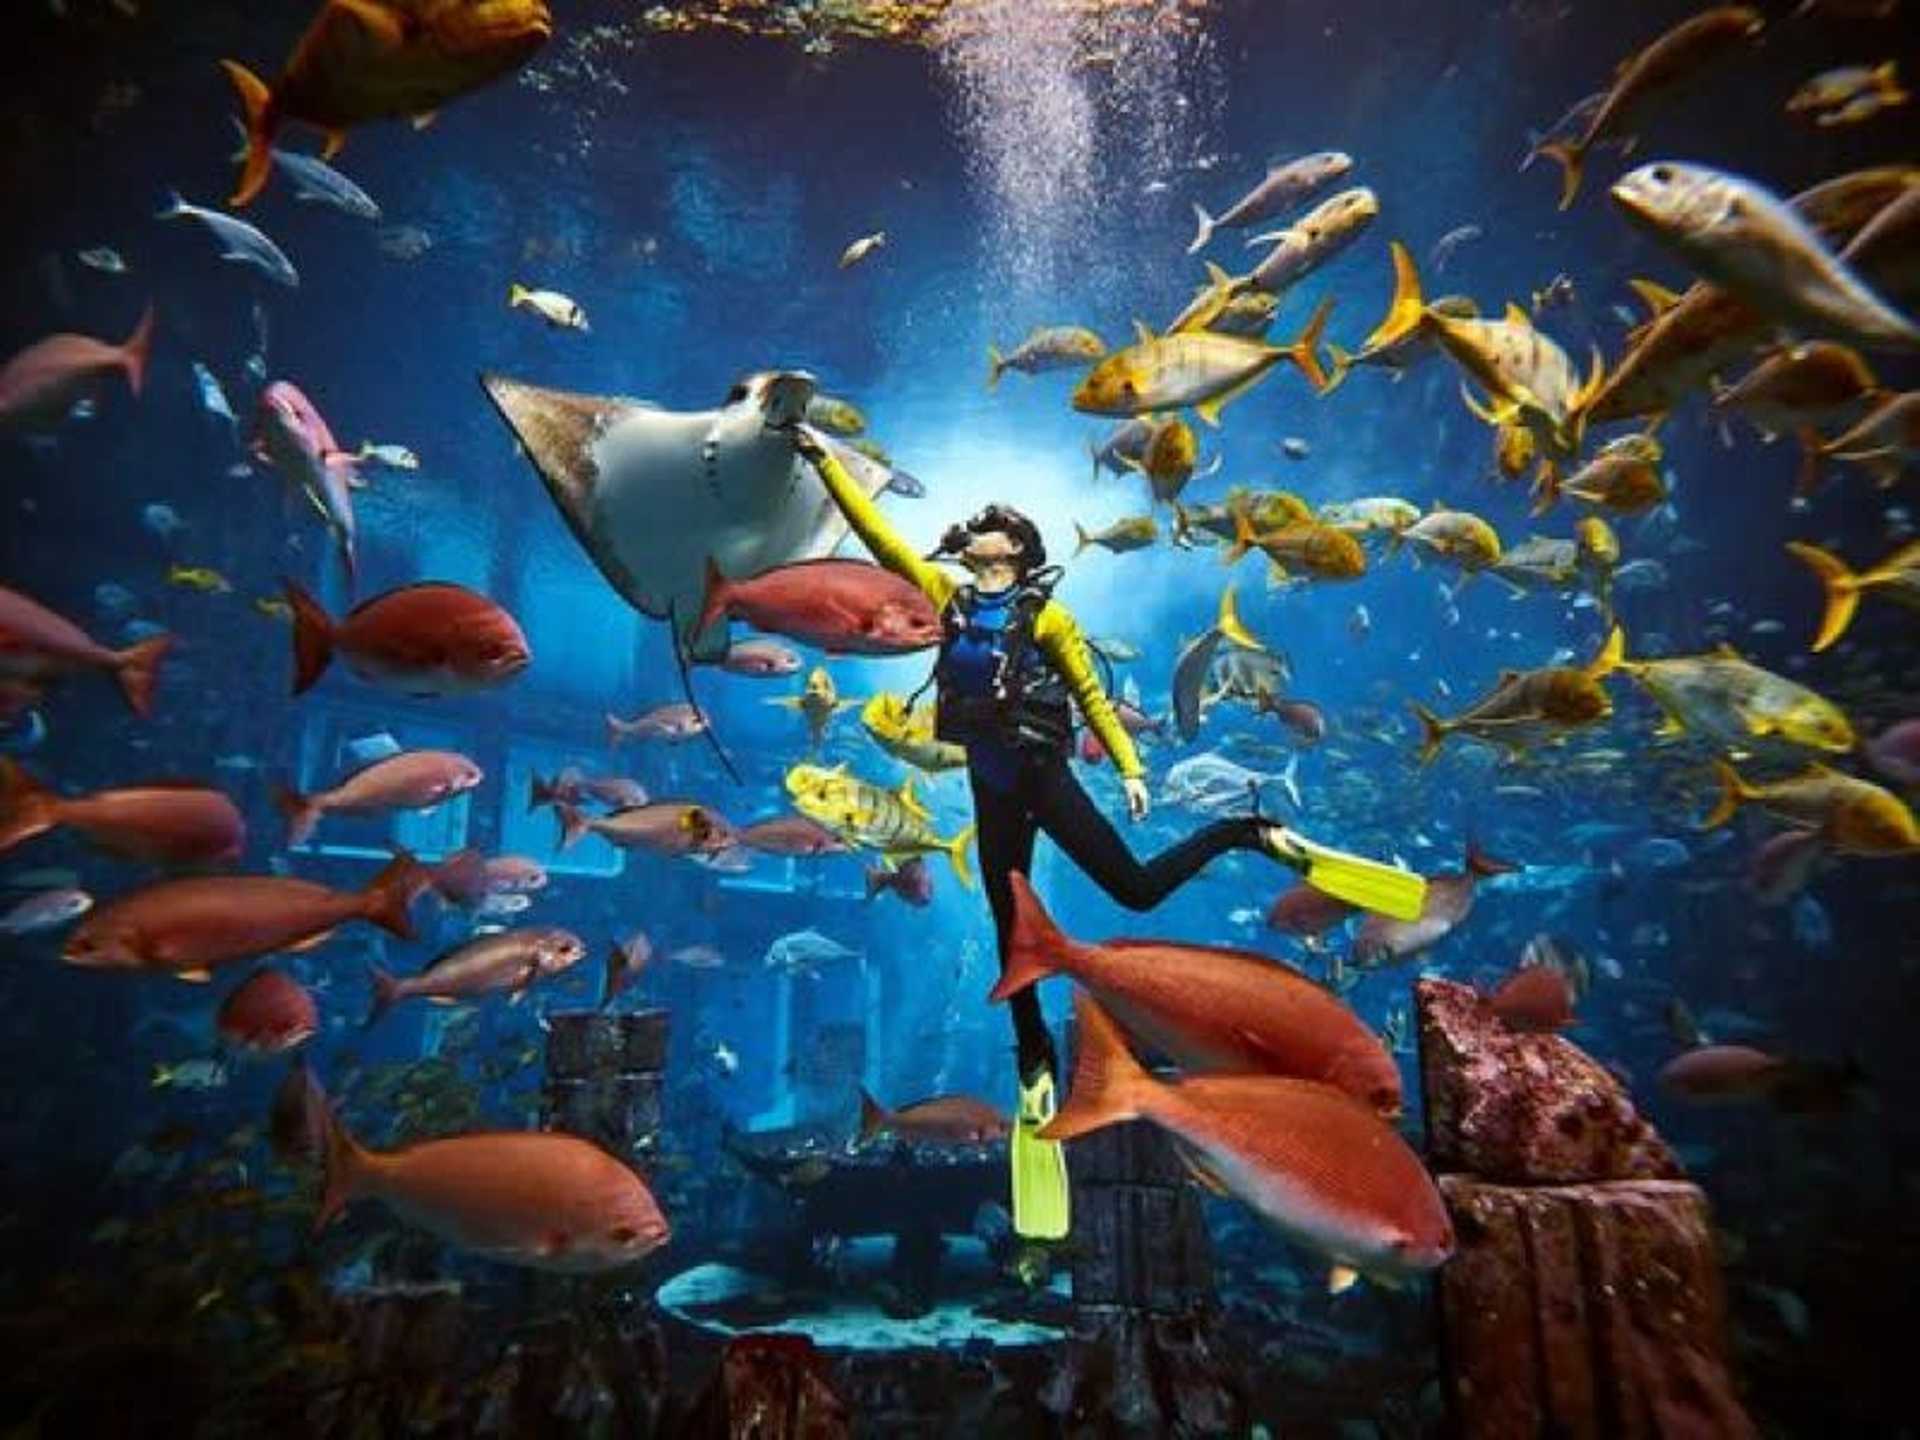 Atlantis Ultimate Snorkel Experience